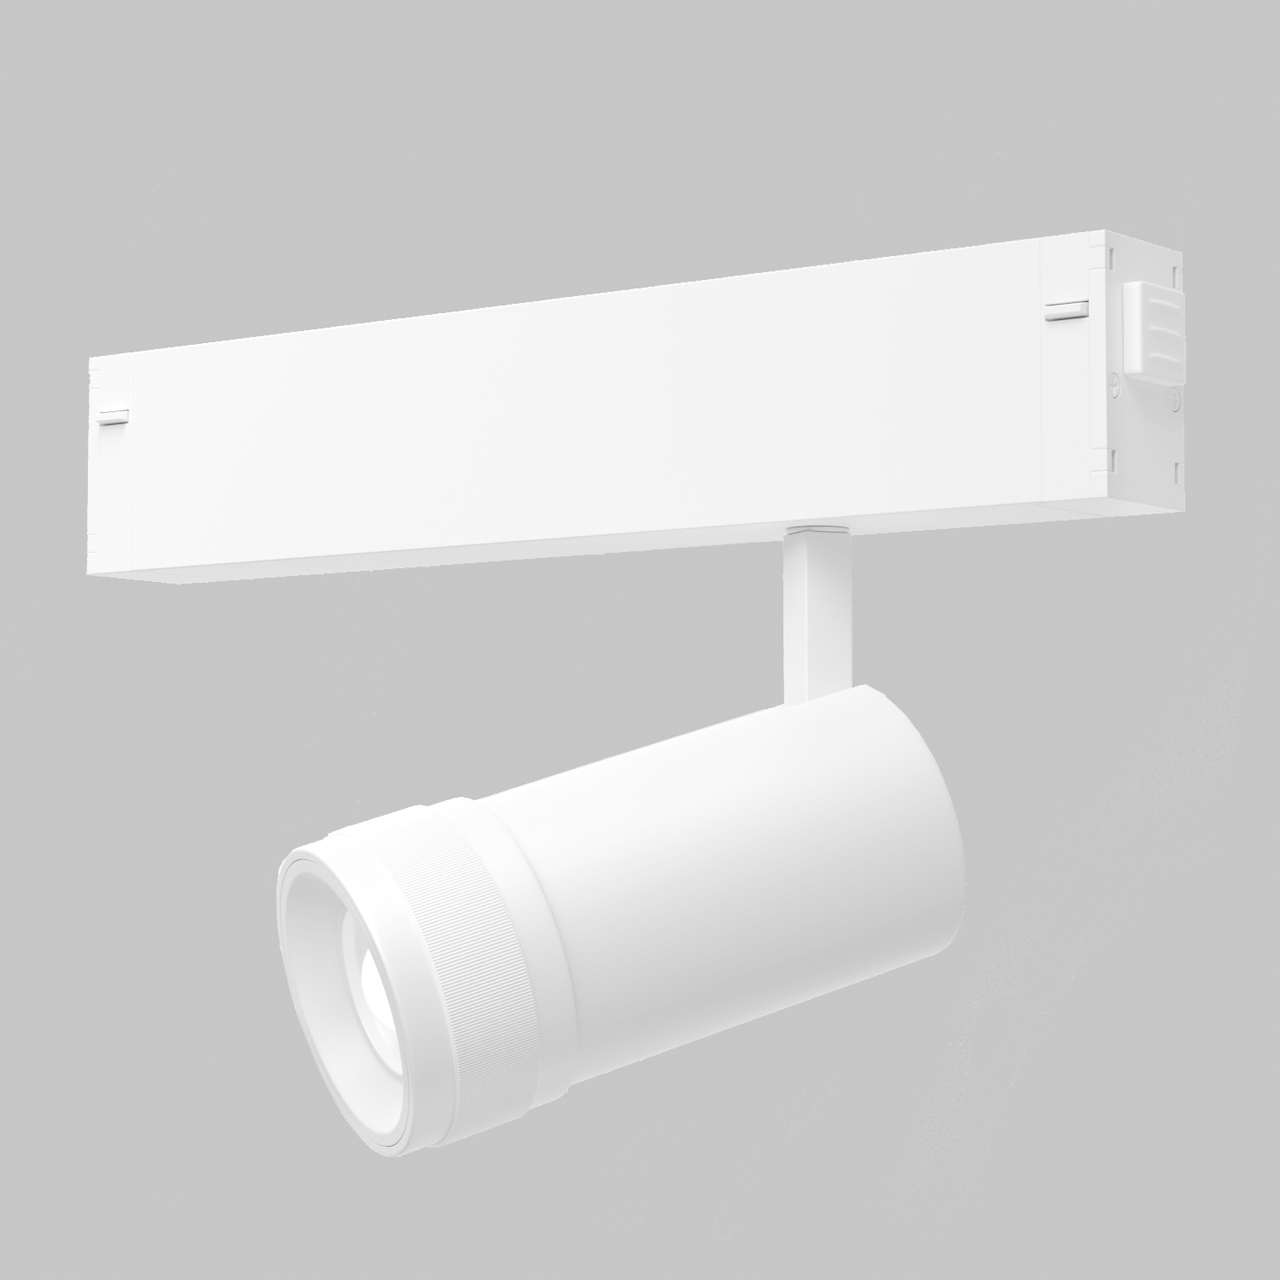 Светильник направленного света поворотный,10-60гр для трековой системы SMART LINE 220В, 7Вт, Белый IL.0050.6004-7-WH